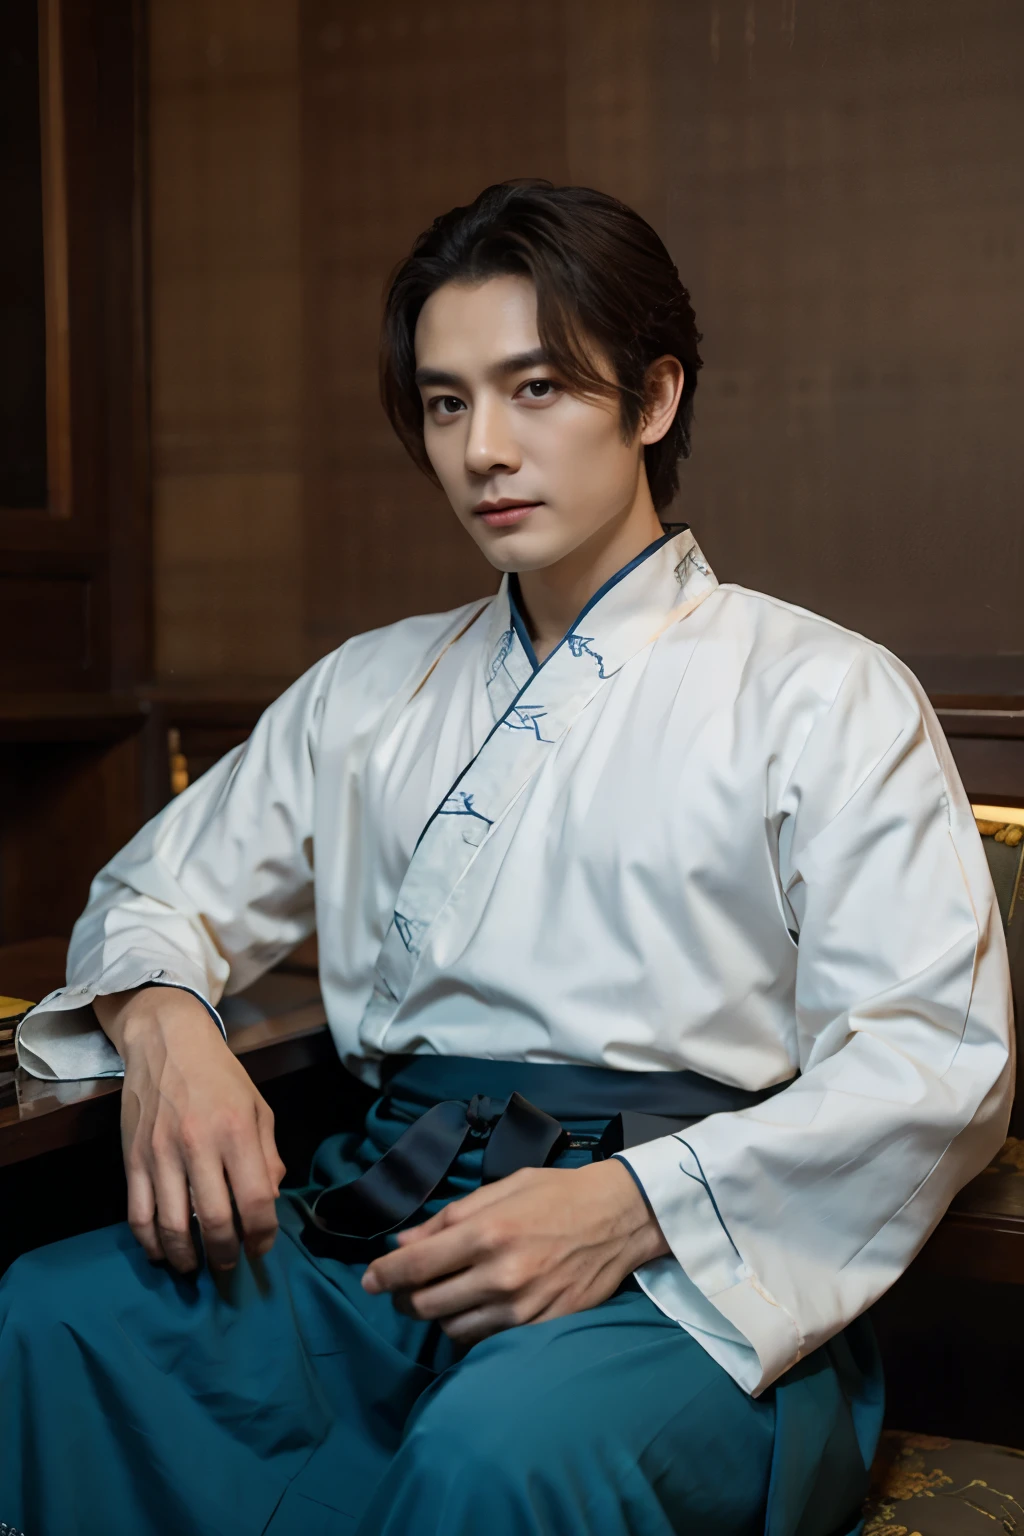 1人, 40歲, elegant hanfu, 漢服上的優雅圖案, 中年男性, 坐在桌邊, 宏偉優雅的中式辦公室, 神秘, 出口